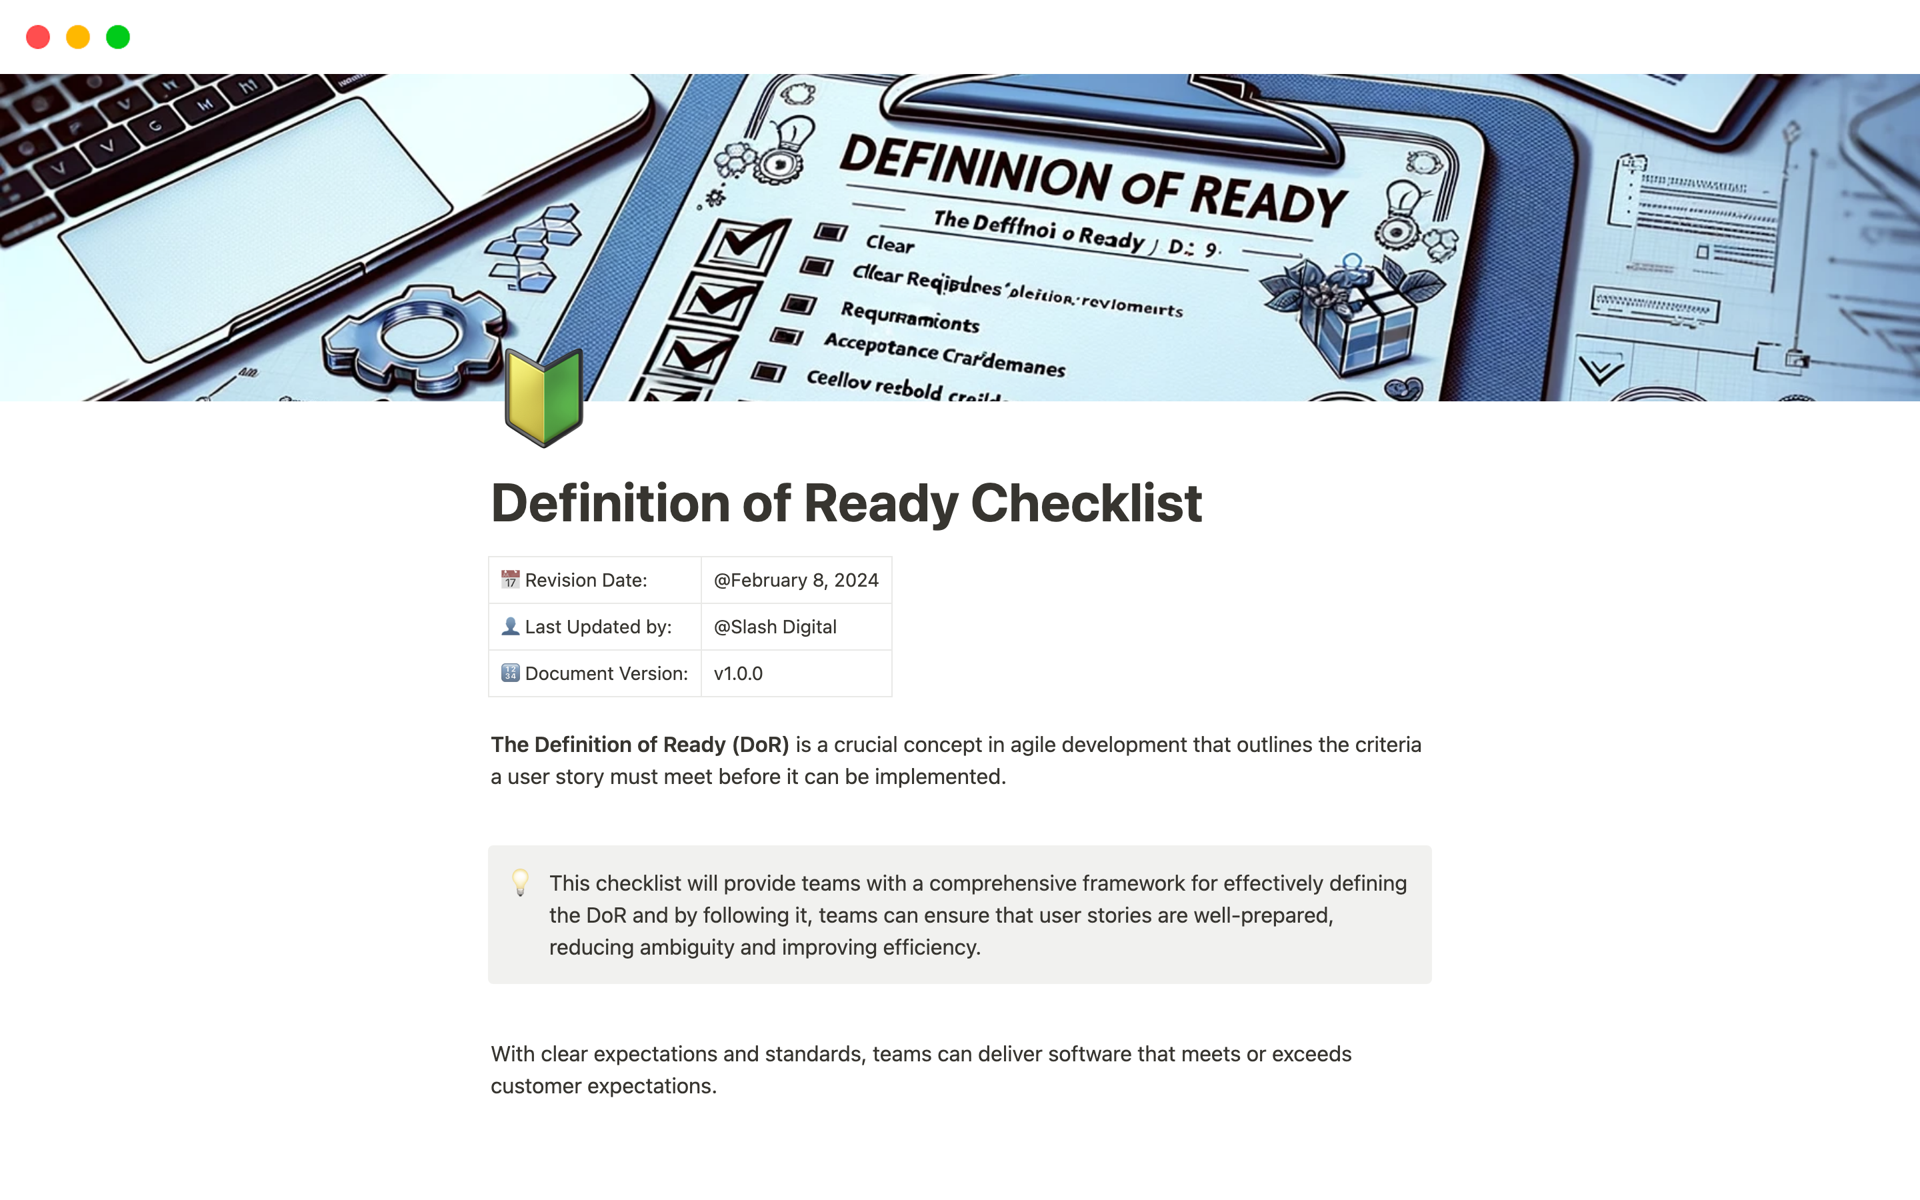 Aperçu du modèle de Definition of Ready Checklist